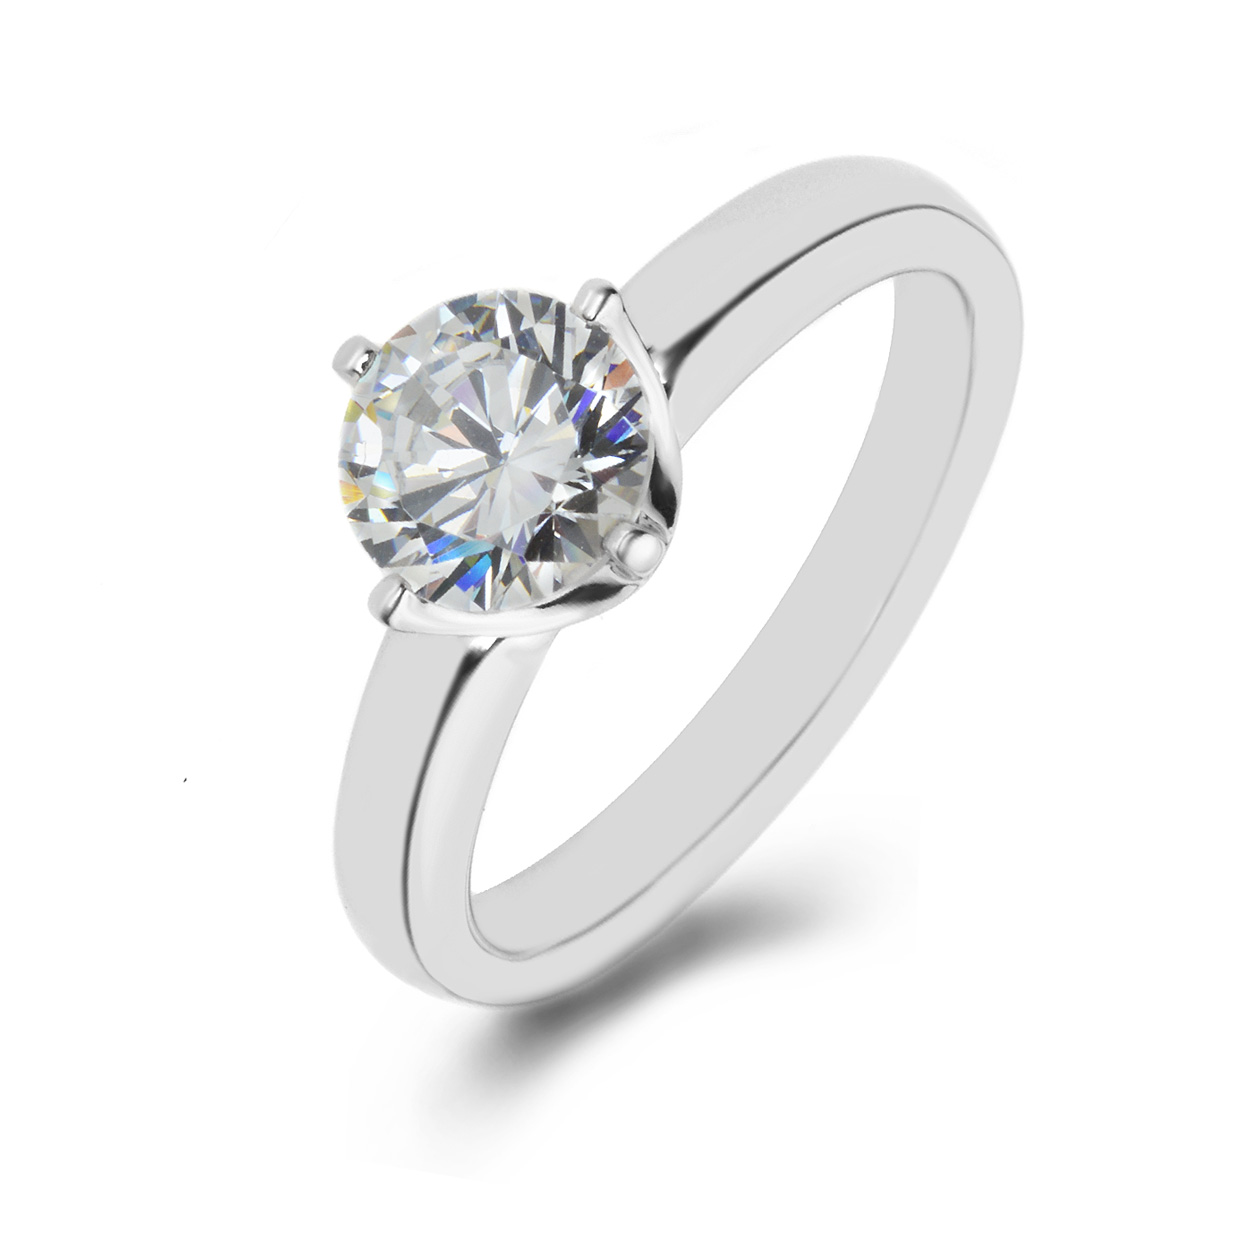 Details more than 83 engagement rings stoke on trent latest - vova.edu.vn